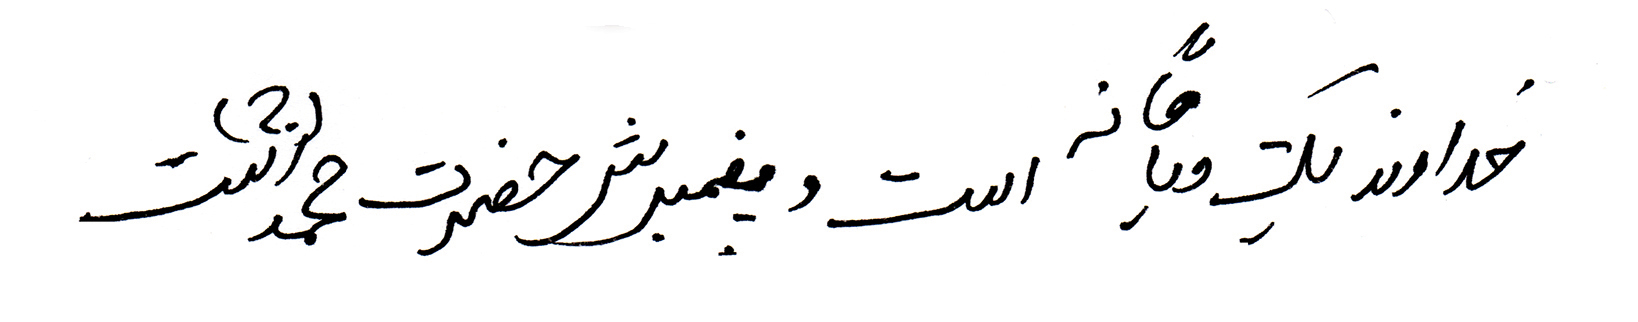 arabische Schrift